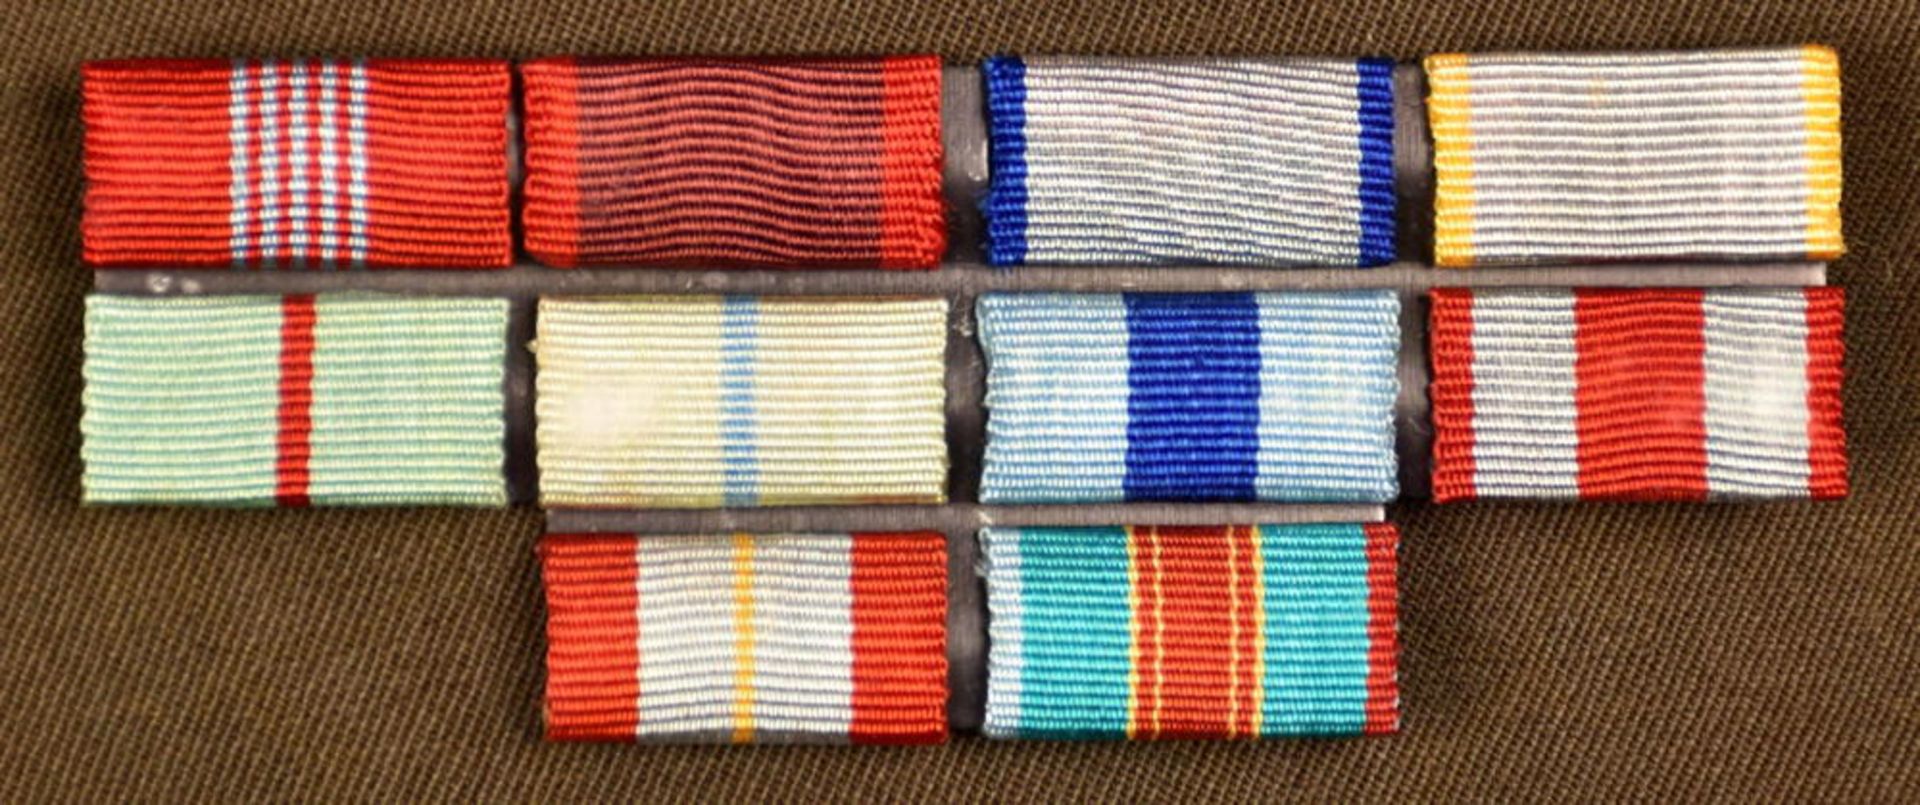 Paradeuniform Generalmajor - Bild 6 aus 7